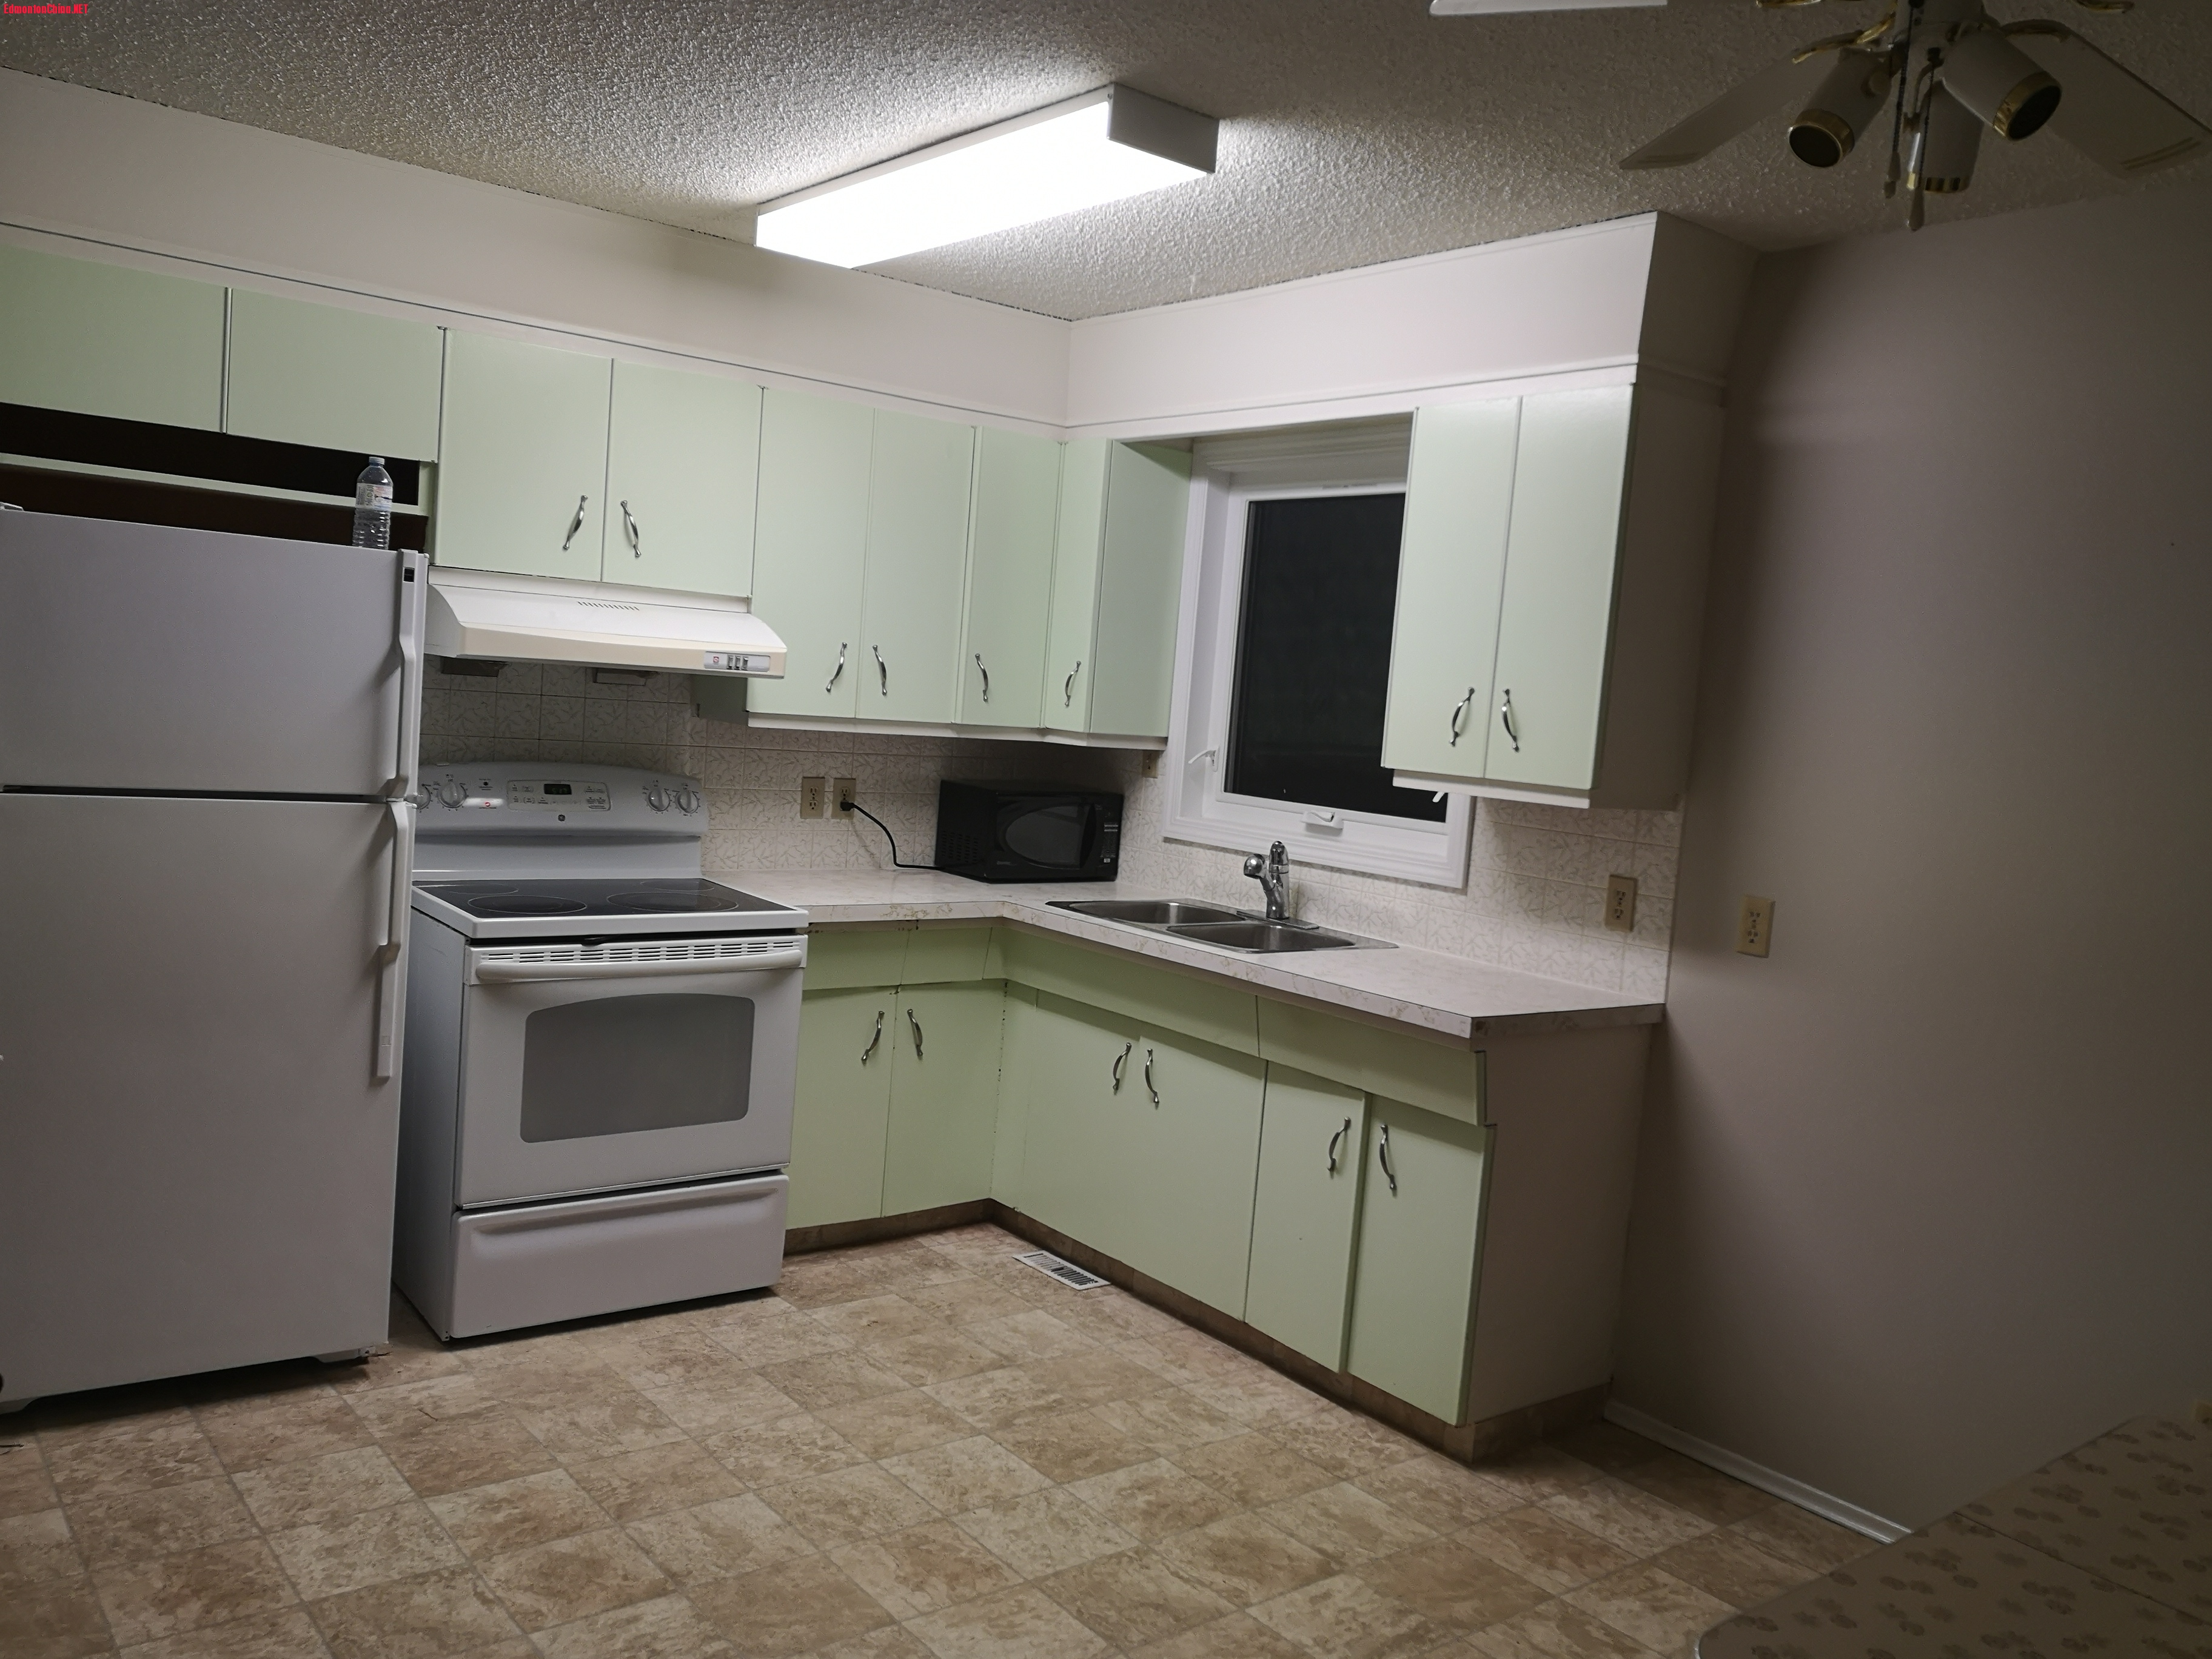 11531 M kitchen.jpg